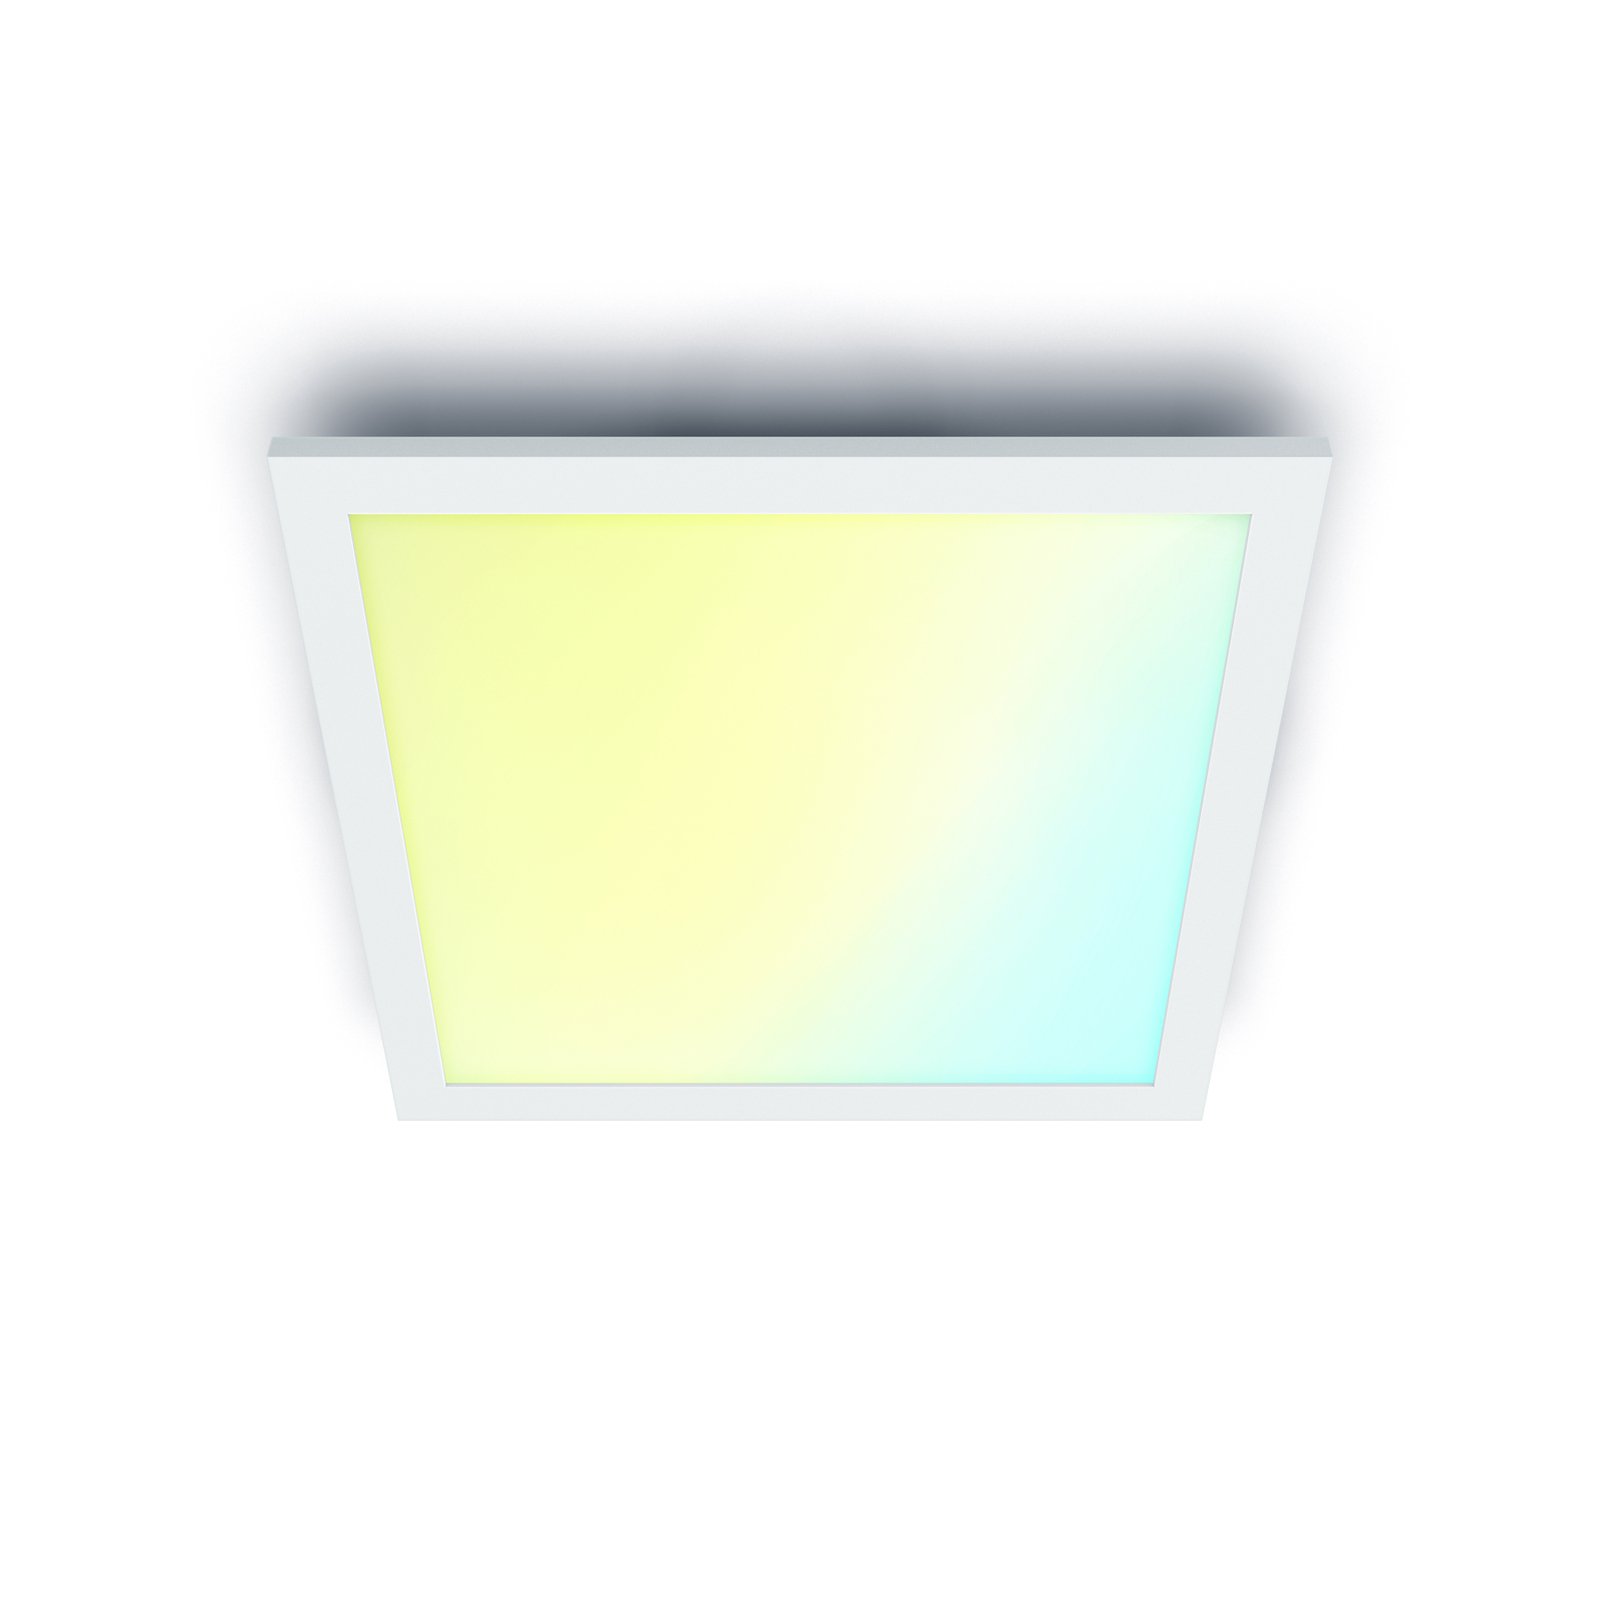 WiZ Panel LED ceiling light, white, 60x60 cm